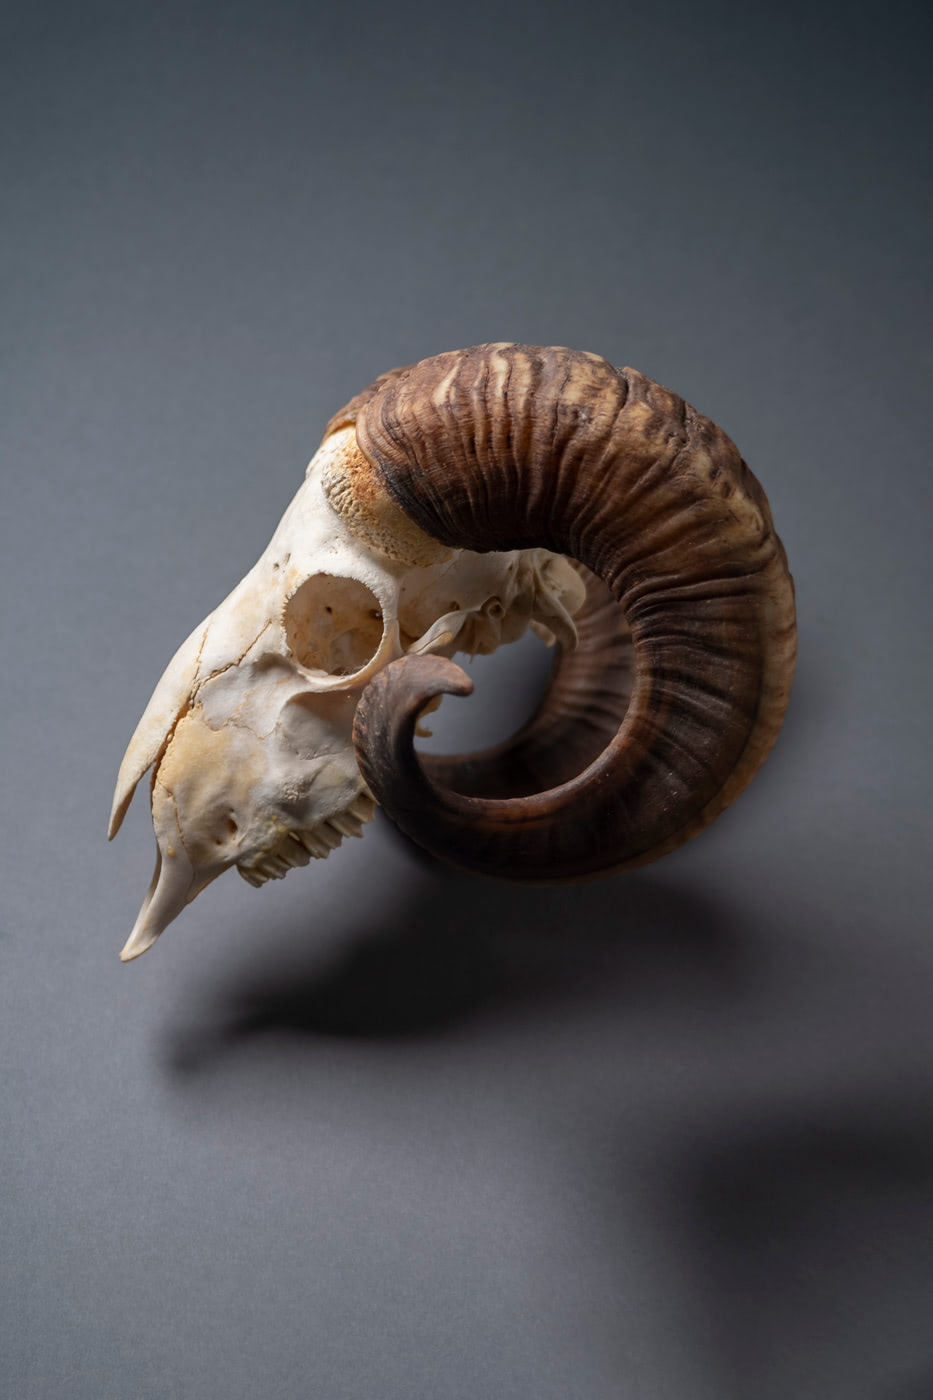 Cráneo de macho cabrío (Capra hircus). Depósito de la Facultad de Veterinaria (ULPGC) en el Museo y Parque Arqueológico Cueva Pintada.